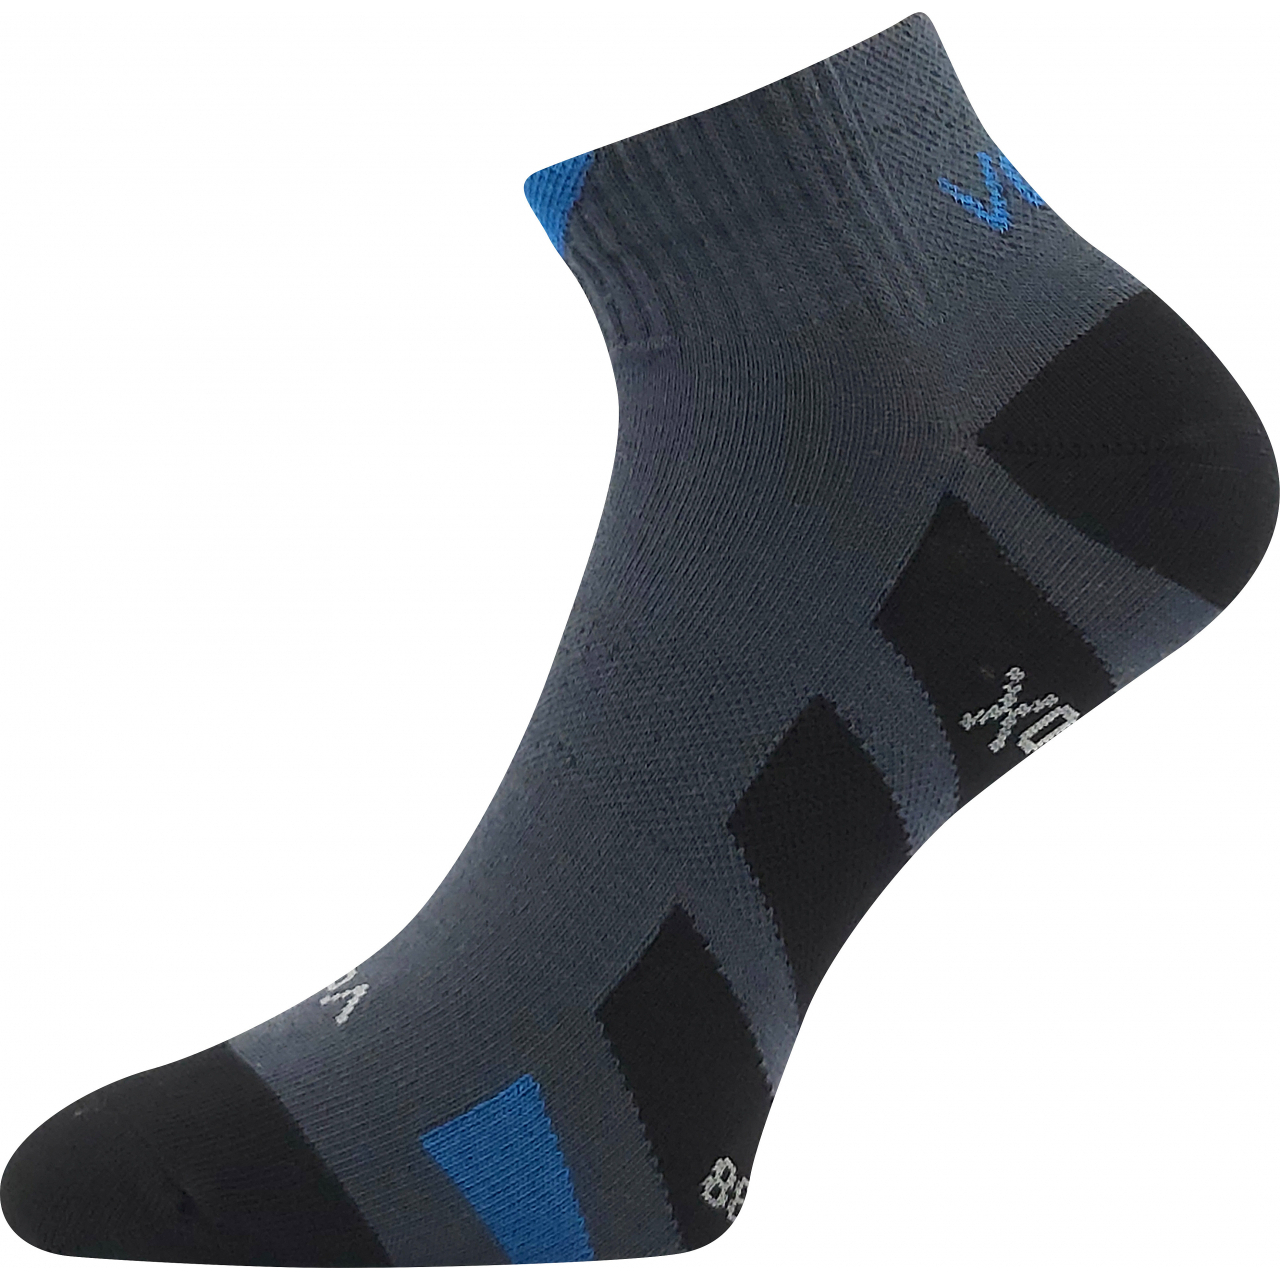 Ponožky unisex slabé Voxx Gastm - tmavě šedé, 43-46